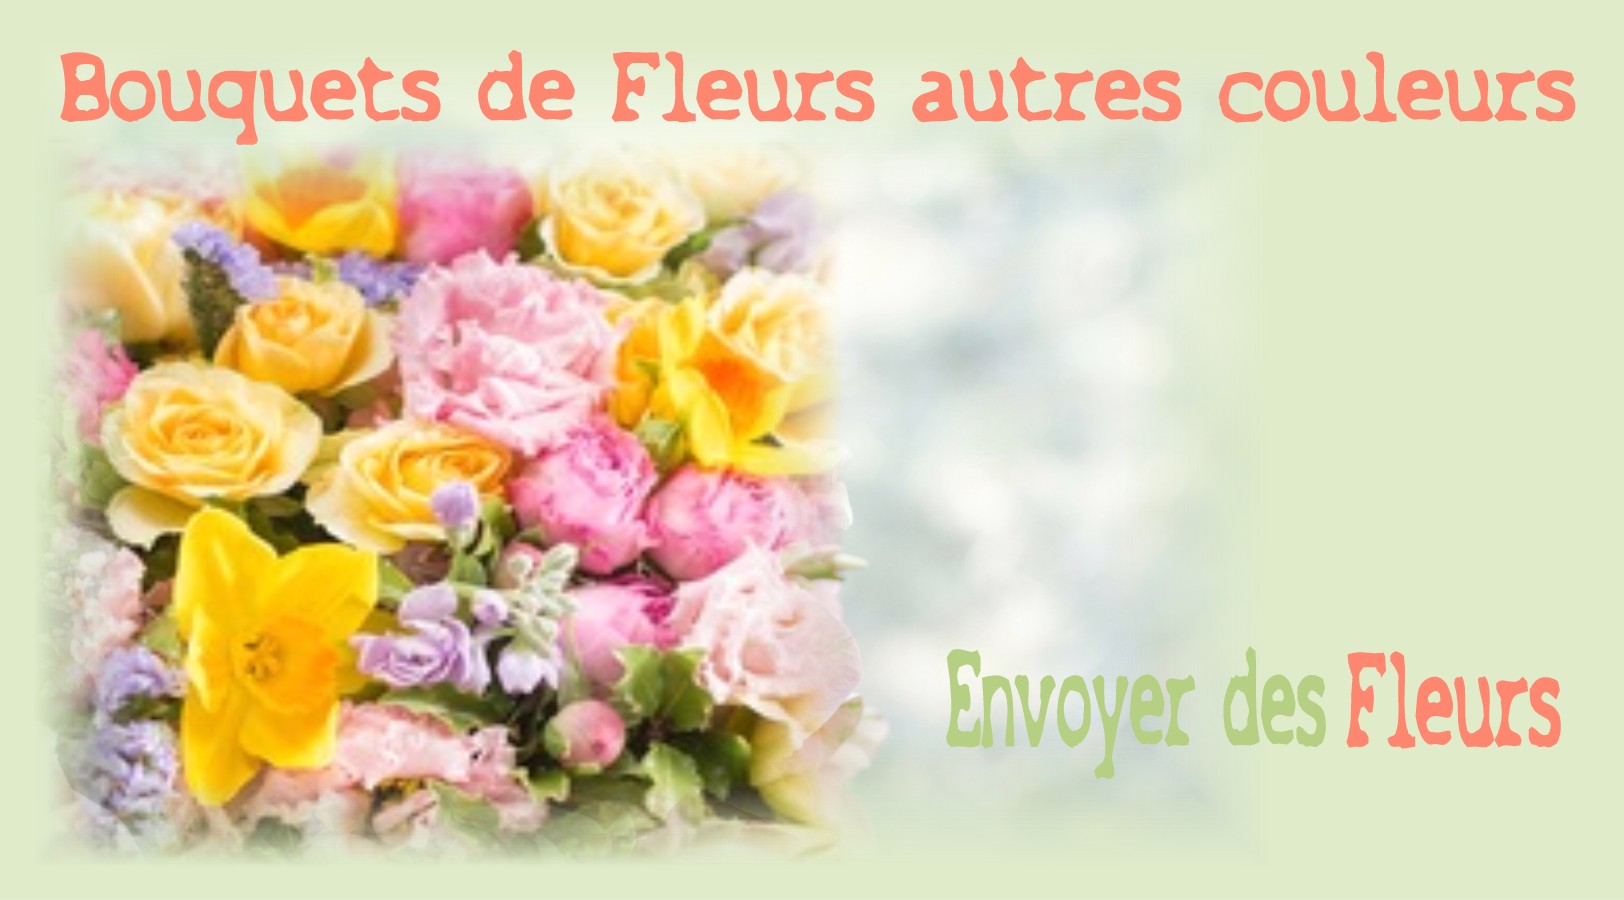 BOUQUETS DE FLEURS AUTRES COULEURS - FLEURISTE STRASBOURG (67) - ENVOYER DES FLEURS